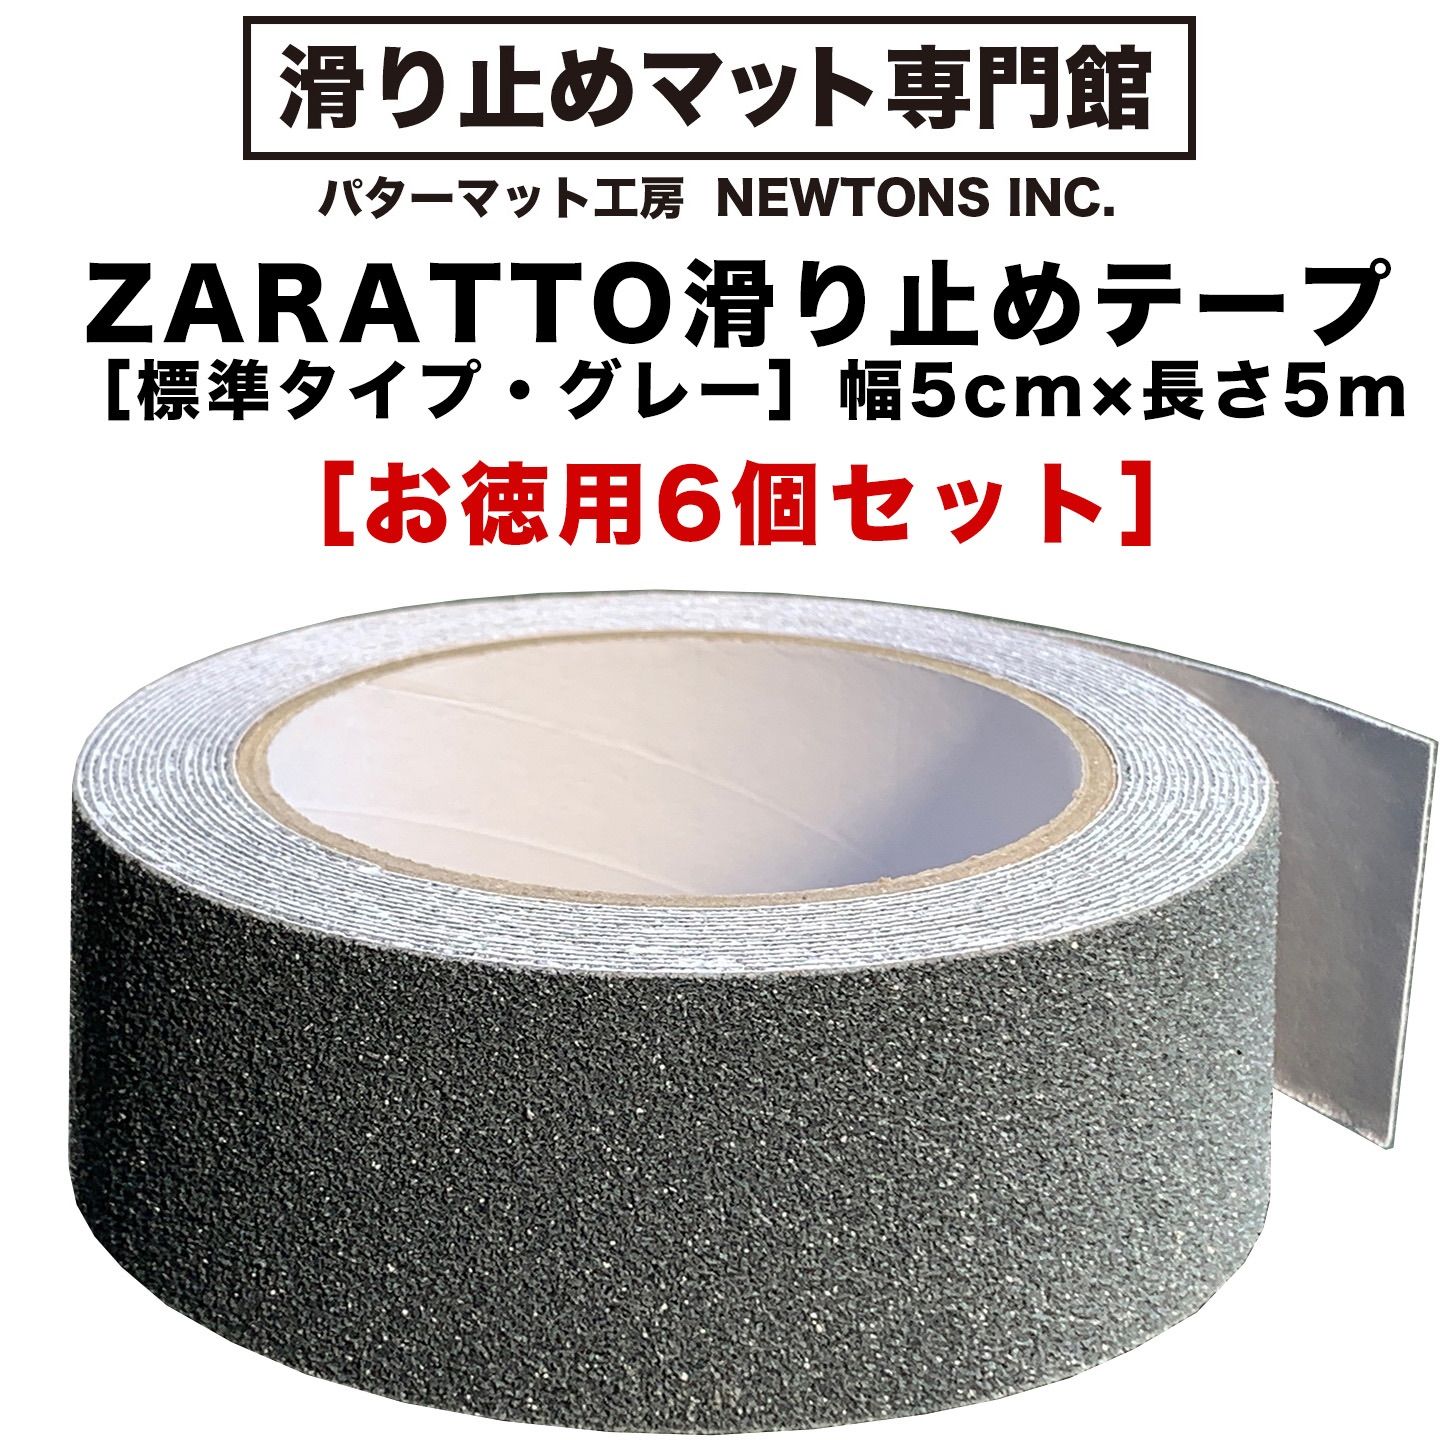 【新作品質保証】お徳用6個セット ZARATTO ザラット 滑り止めテープ 屋内・透明 幅10cm×長さ5m PEVA 耐水 撥水性 その他